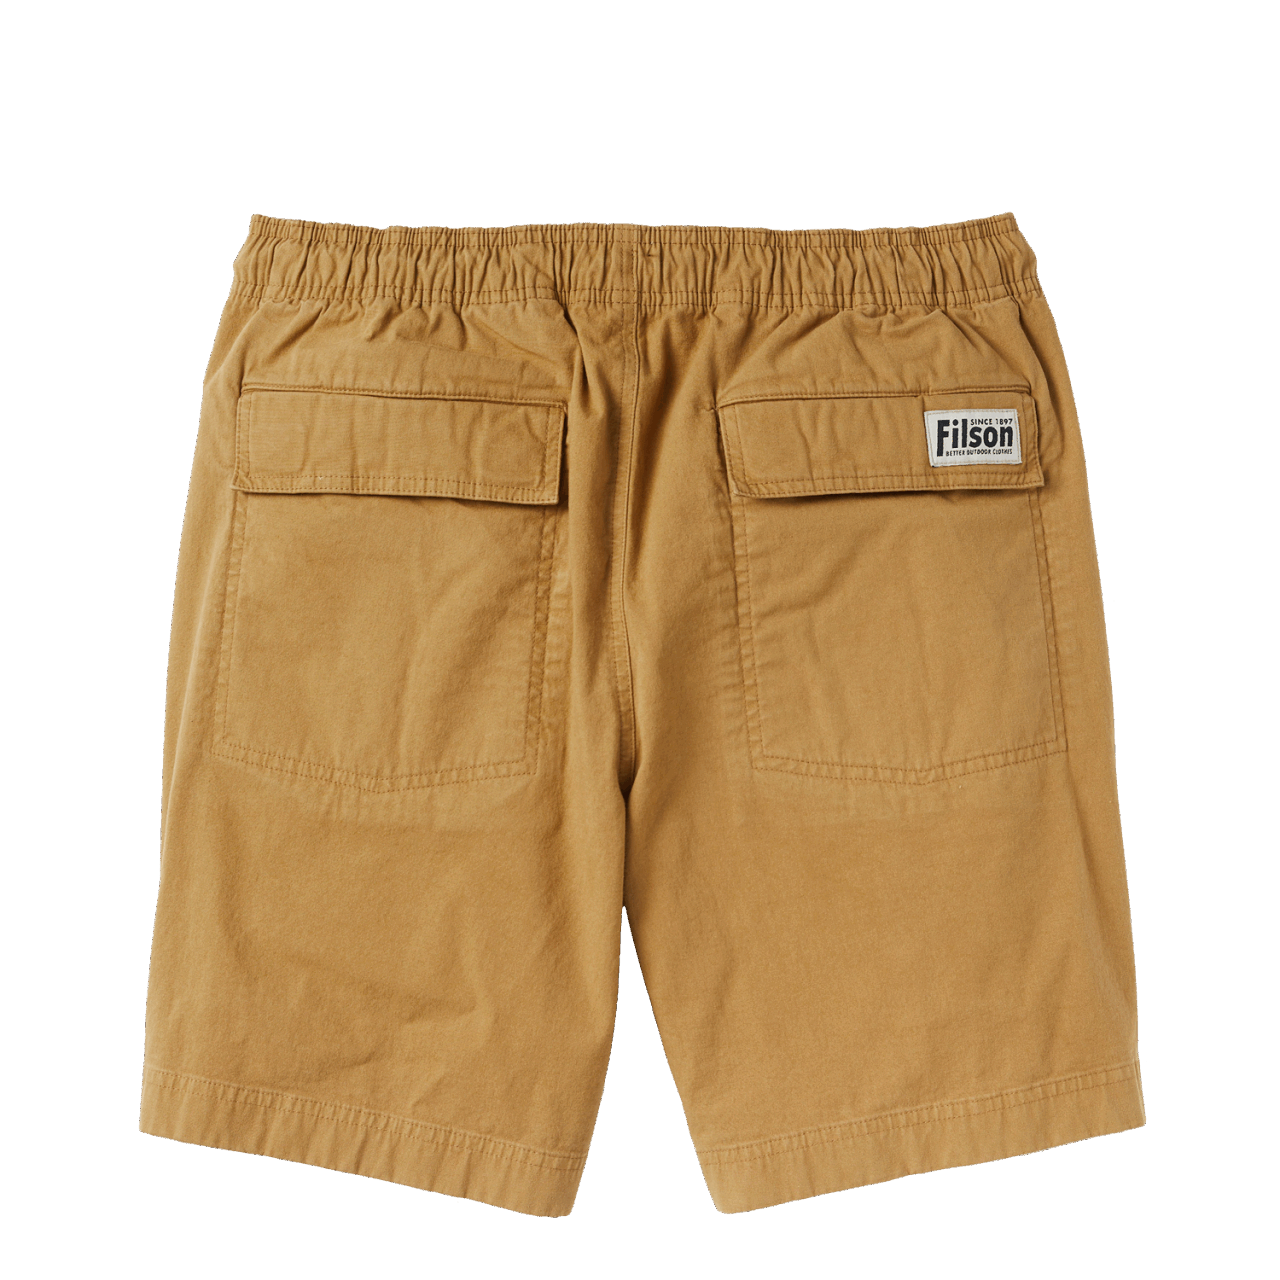 Filson Dry Falls Shorts - mustard